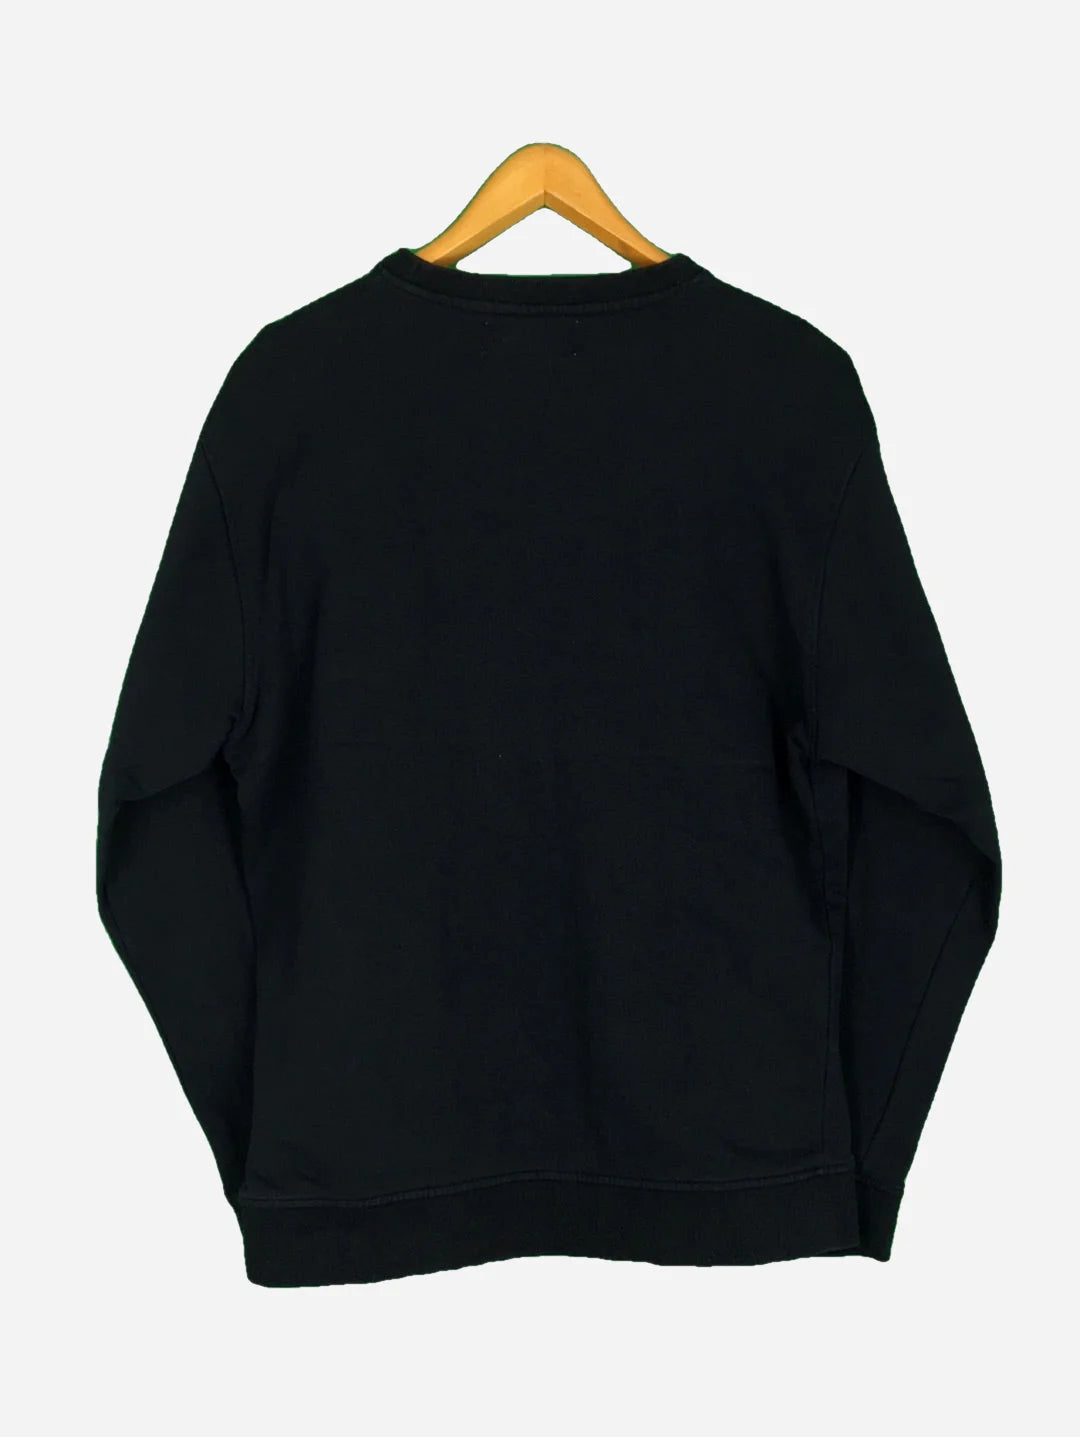 Kappa Sweater (L)